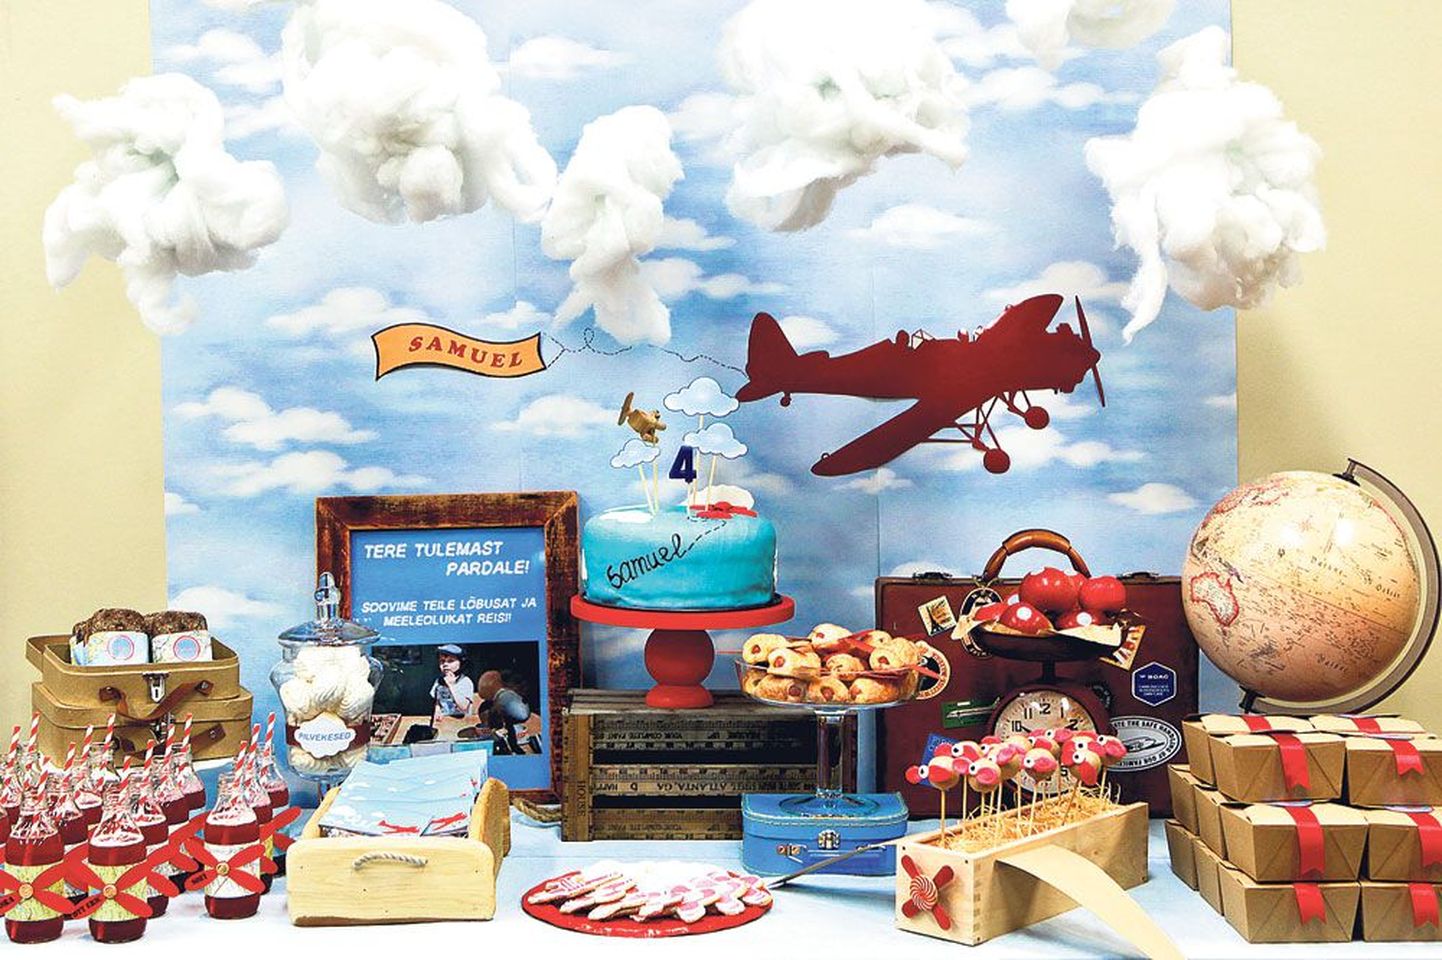 Üks Memory Makersi lastesünnipäev oli vanadest lennukitest inspireeritud pidu, kus dekoratsioonideks olid rippuvad vatiinist pilvekesed, laual propelleritega koogikesed ja joogipudelid, pilvekujulised küpsised, sefiiripilvekesed jms.